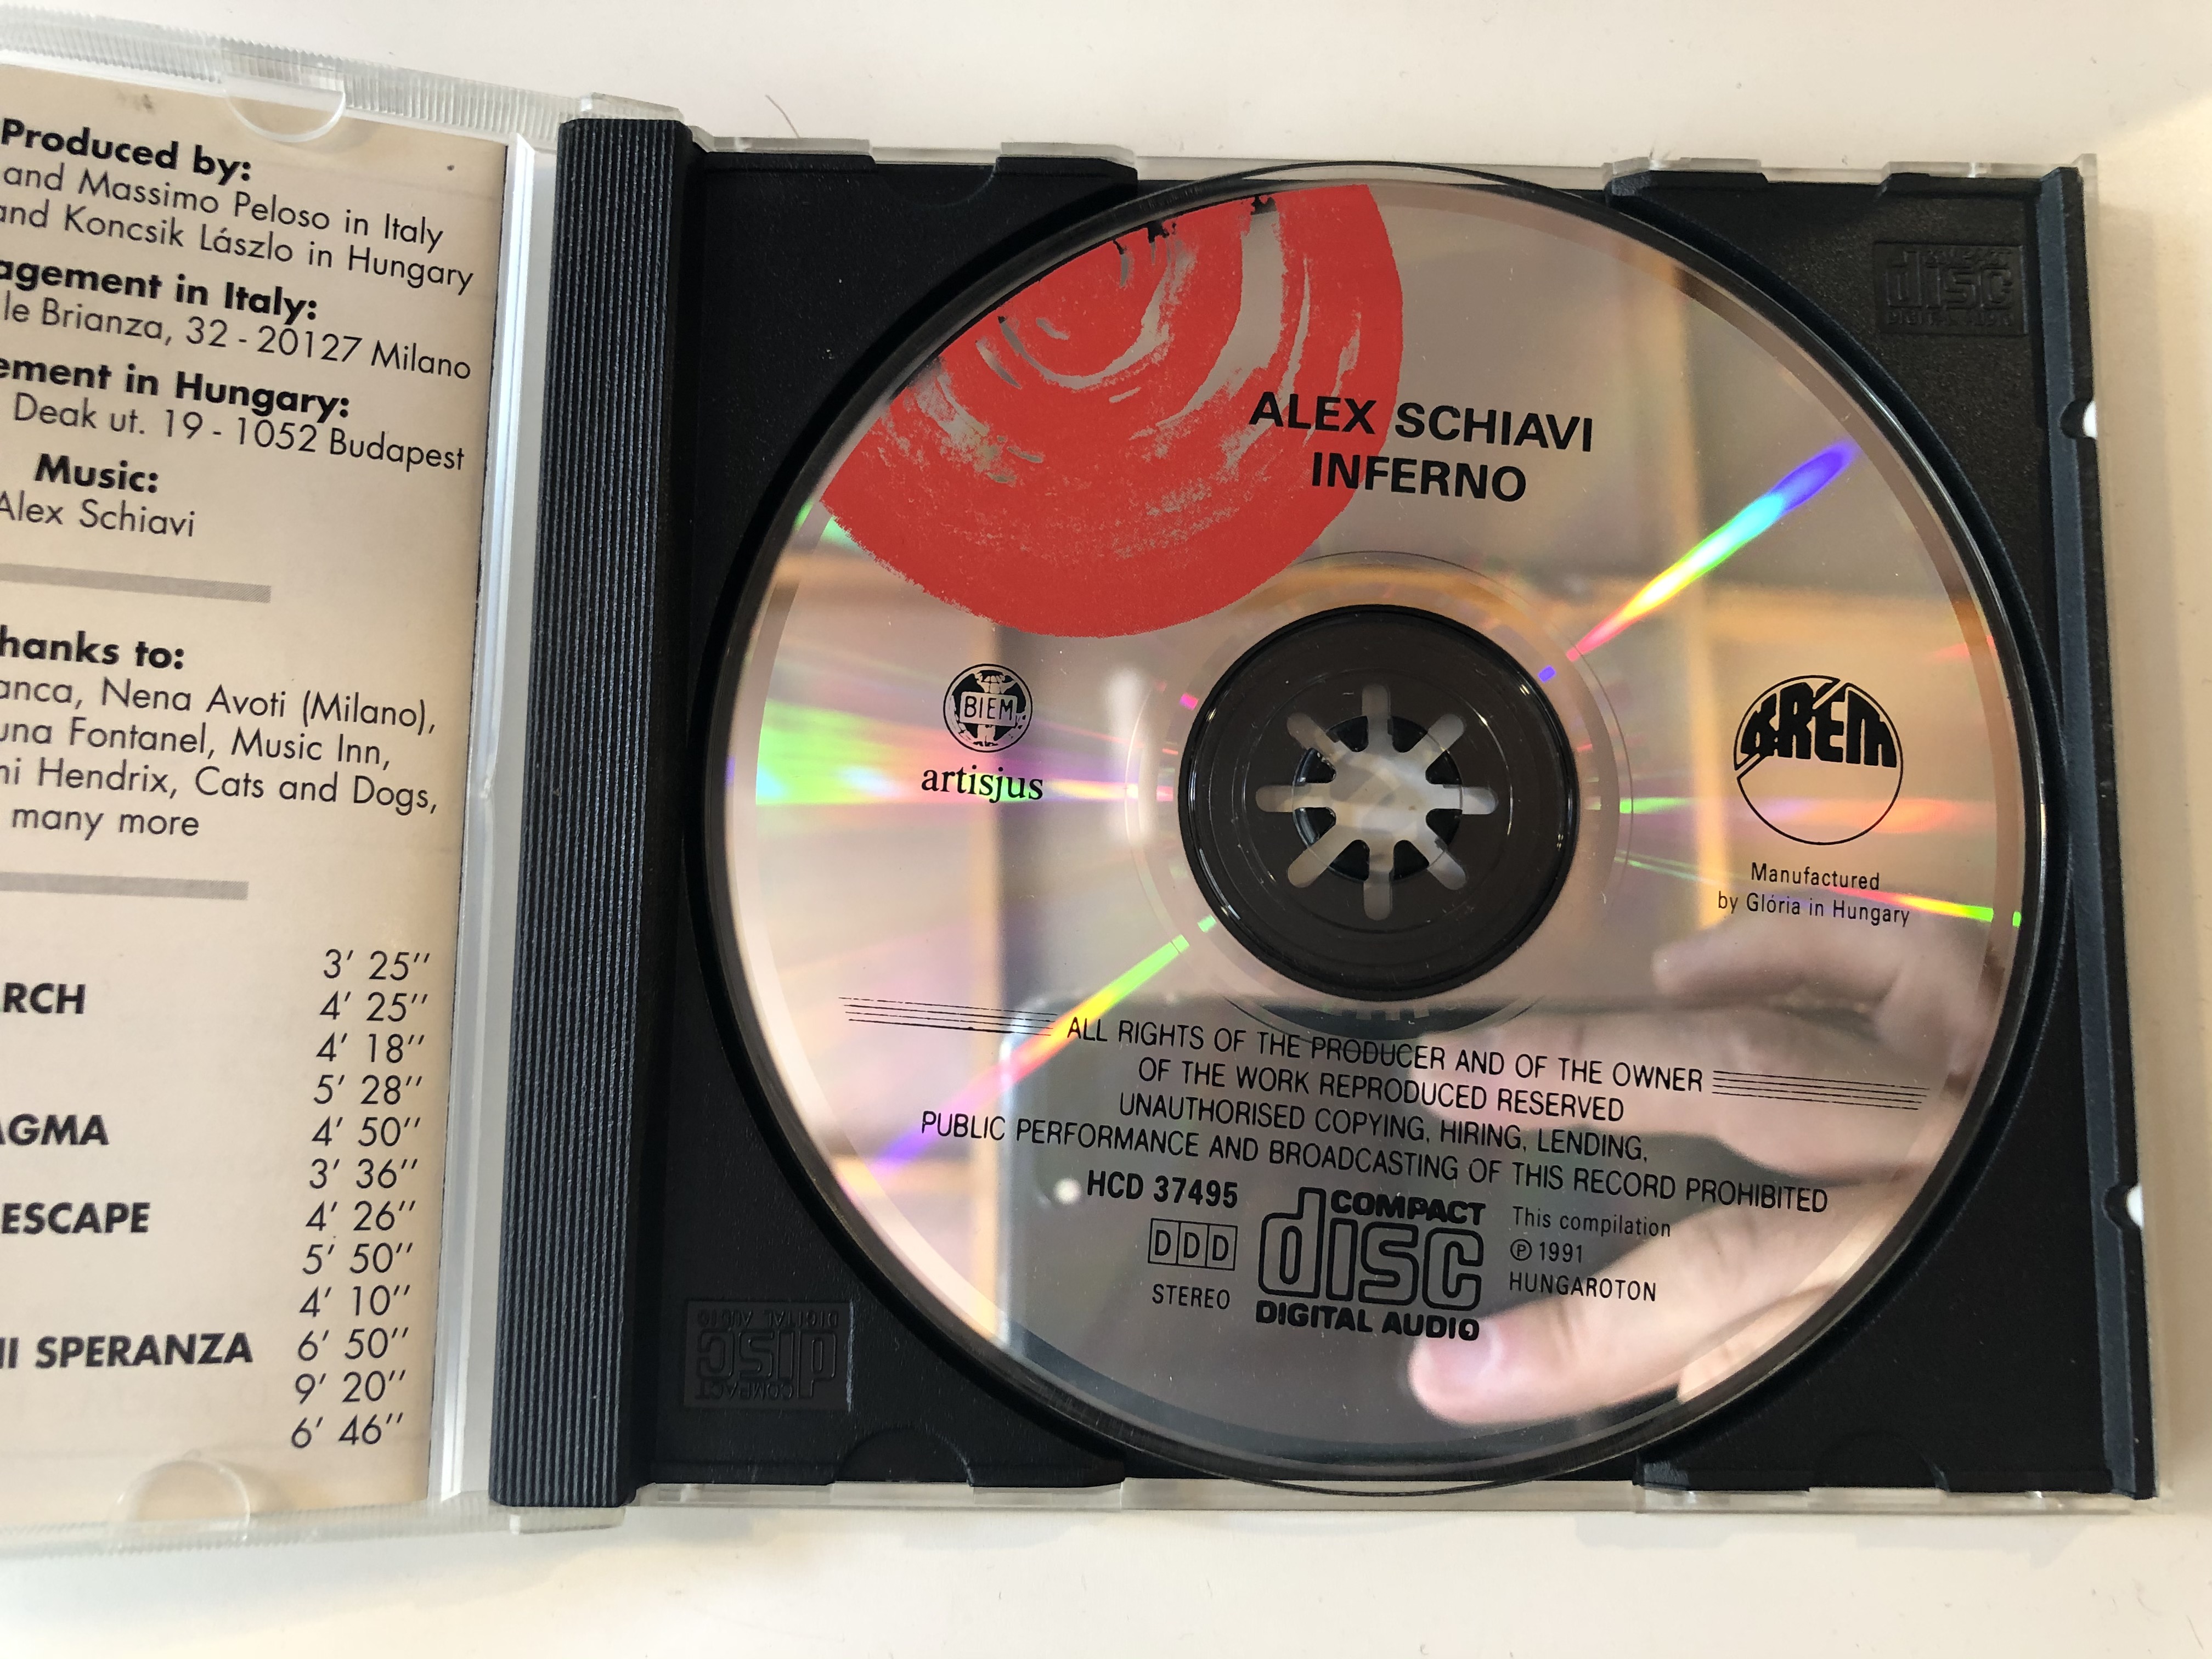 inferno-alex-schiavi-kr-m-audio-cd-1991-stereo-hcd-37495-3-.jpg